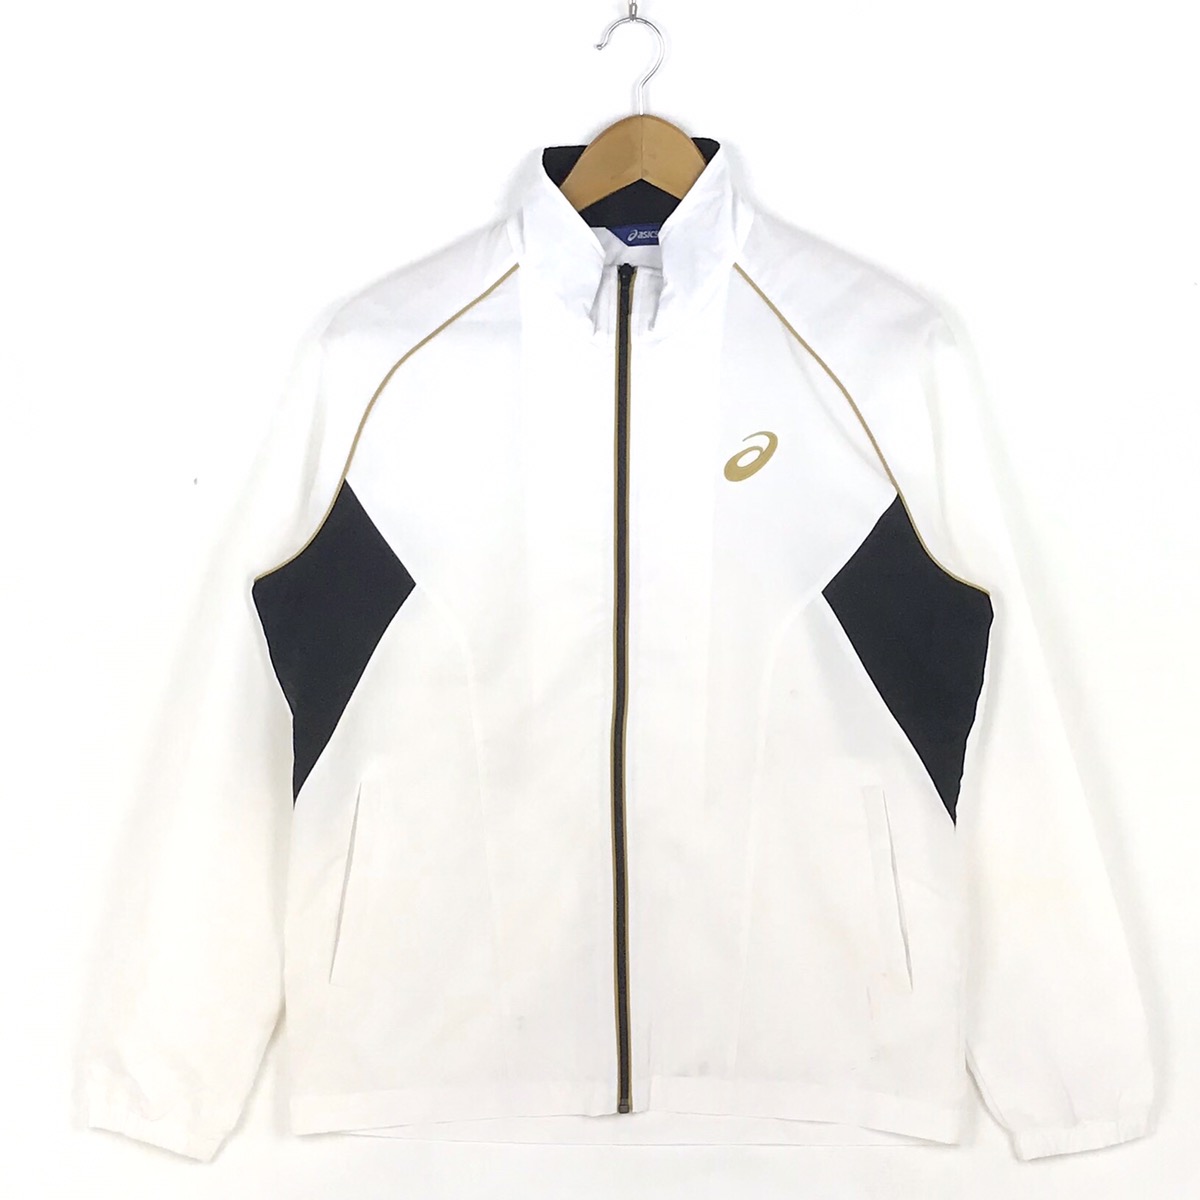 Asics windbreaker Jacket/ Full Zipper Sportwear Sweater - 1